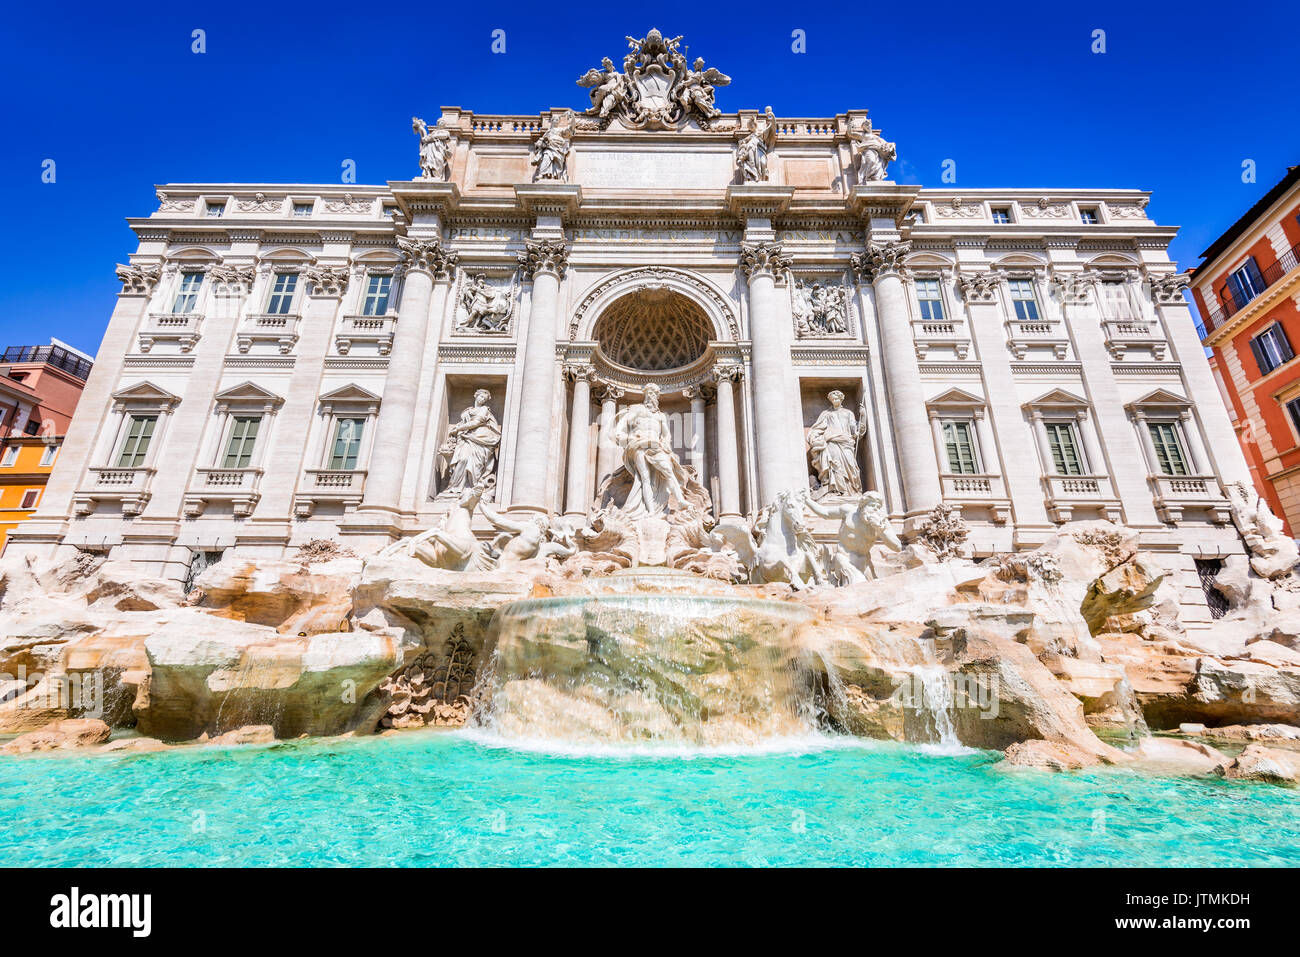 Rome, Italie. célèbre fontaine de Trevi et du palazzo poli (italien : Fontana di Trevi) dans la ville italienne de Roms. Banque D'Images